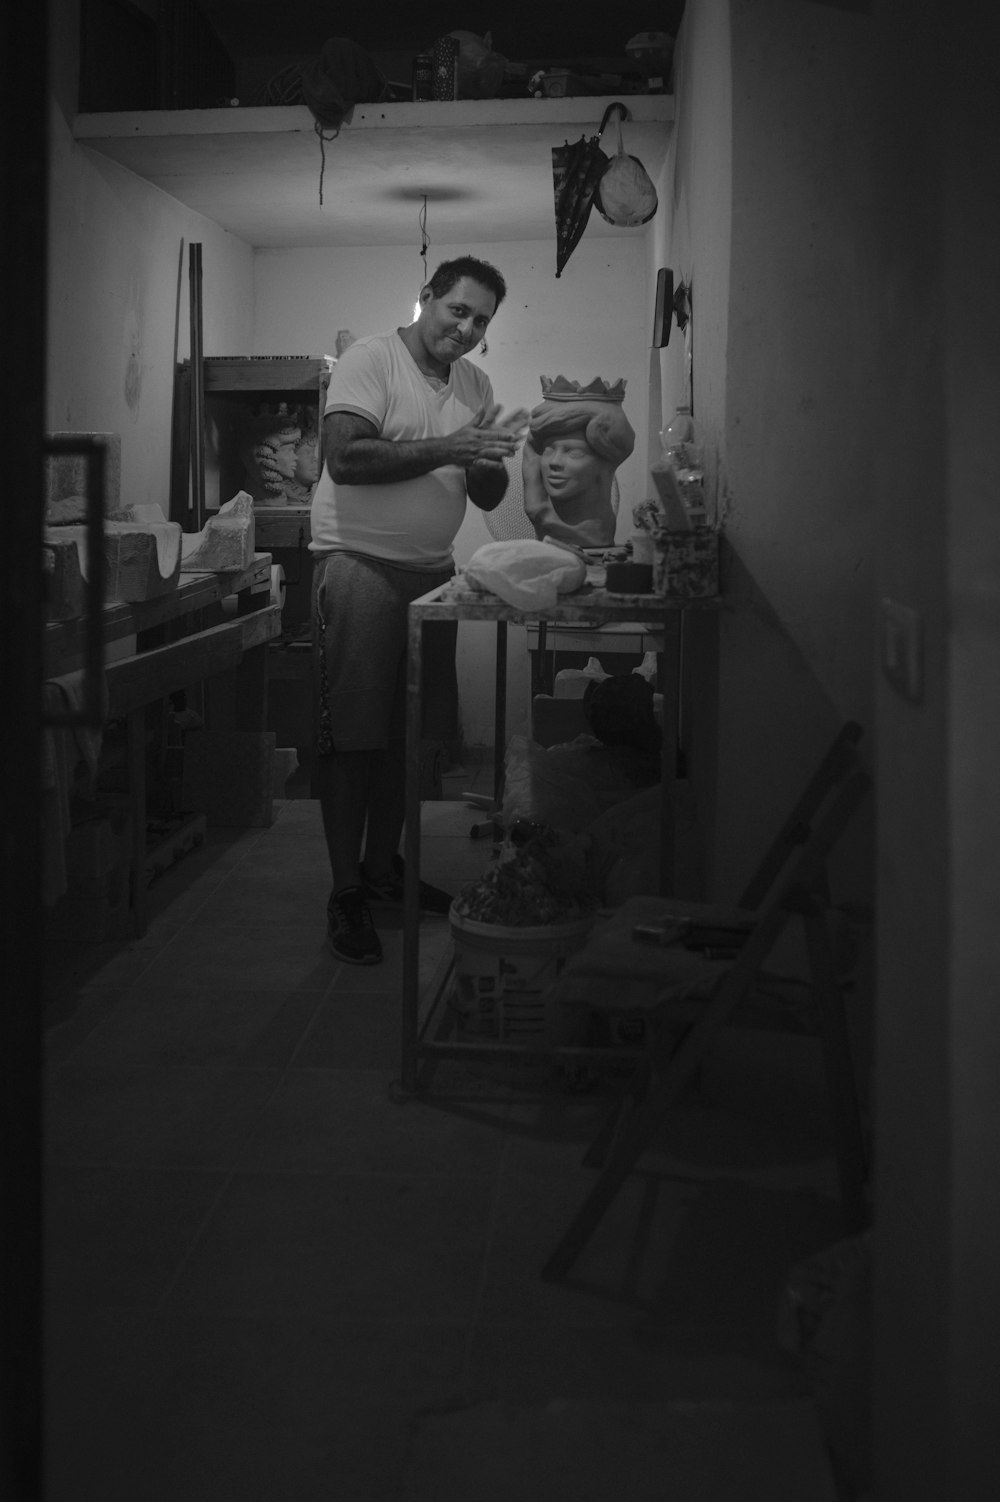 Une photo en noir et blanc d’un homme dans une cuisine